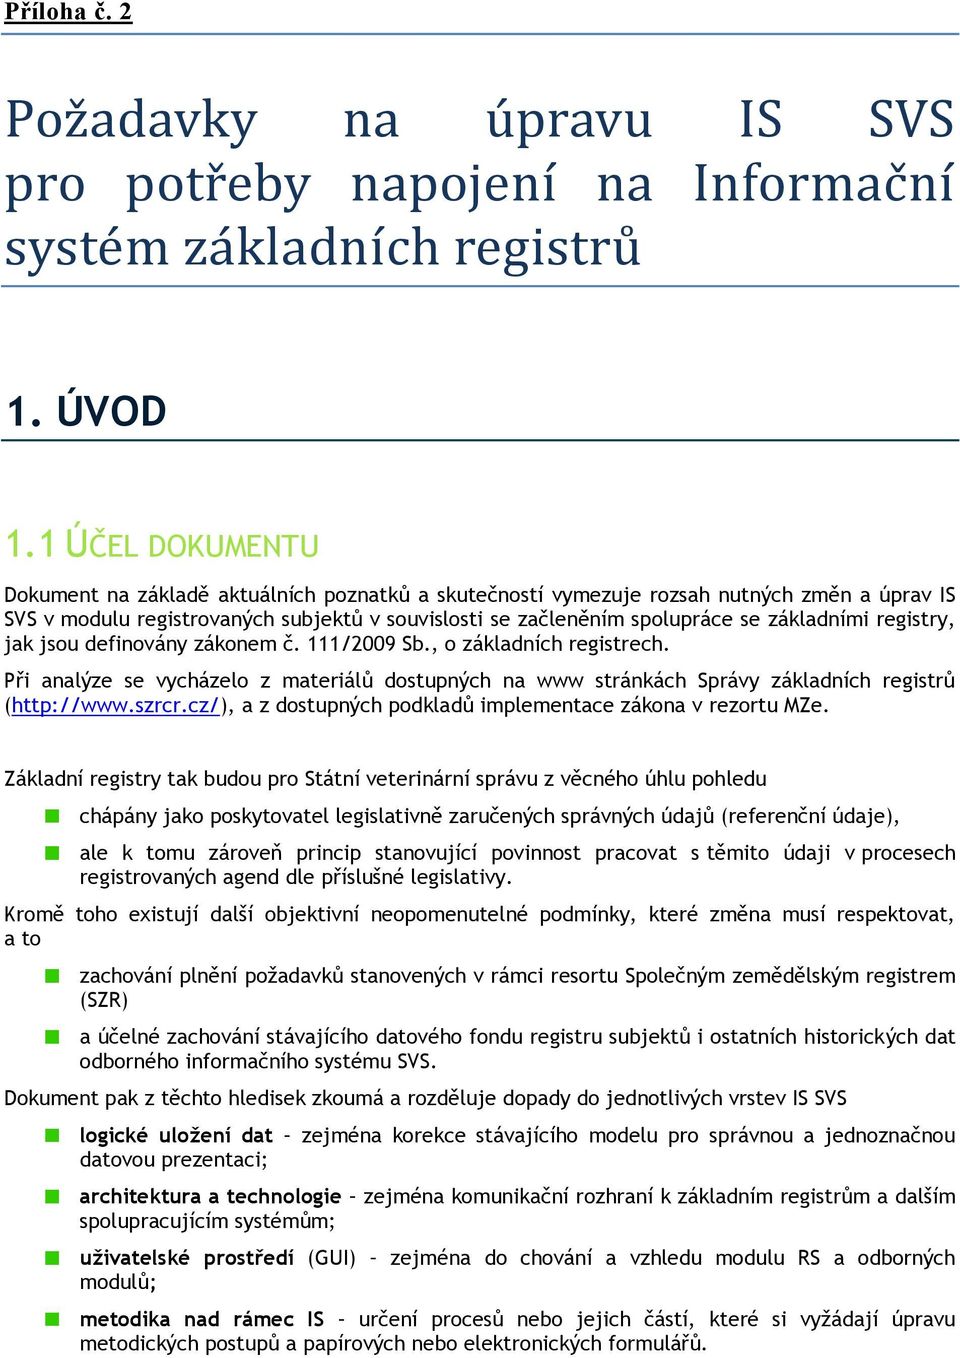 základními registry, jak jsou definovány zákonem č. 111/2009 Sb., o základních registrech. Při analýze se vycházelo z materiálů dostupných na www stránkách Správy základních registrů (http://www.